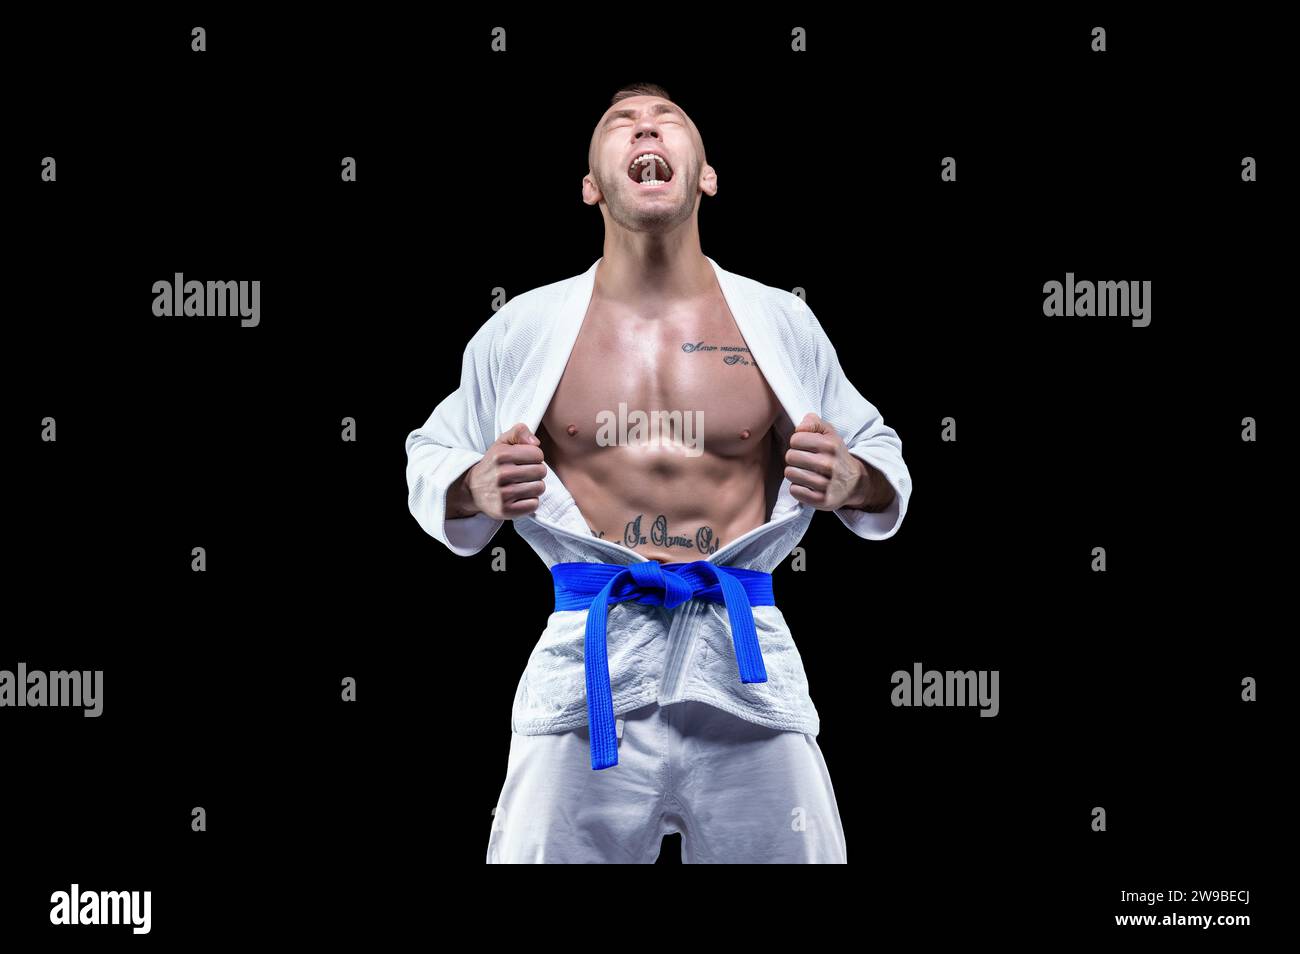 Profisportler im Kimono schreit emotional. Konzept von Karate, Jiu-Jitsu, Sambo, Judo. Gemischte Medien Stockfoto